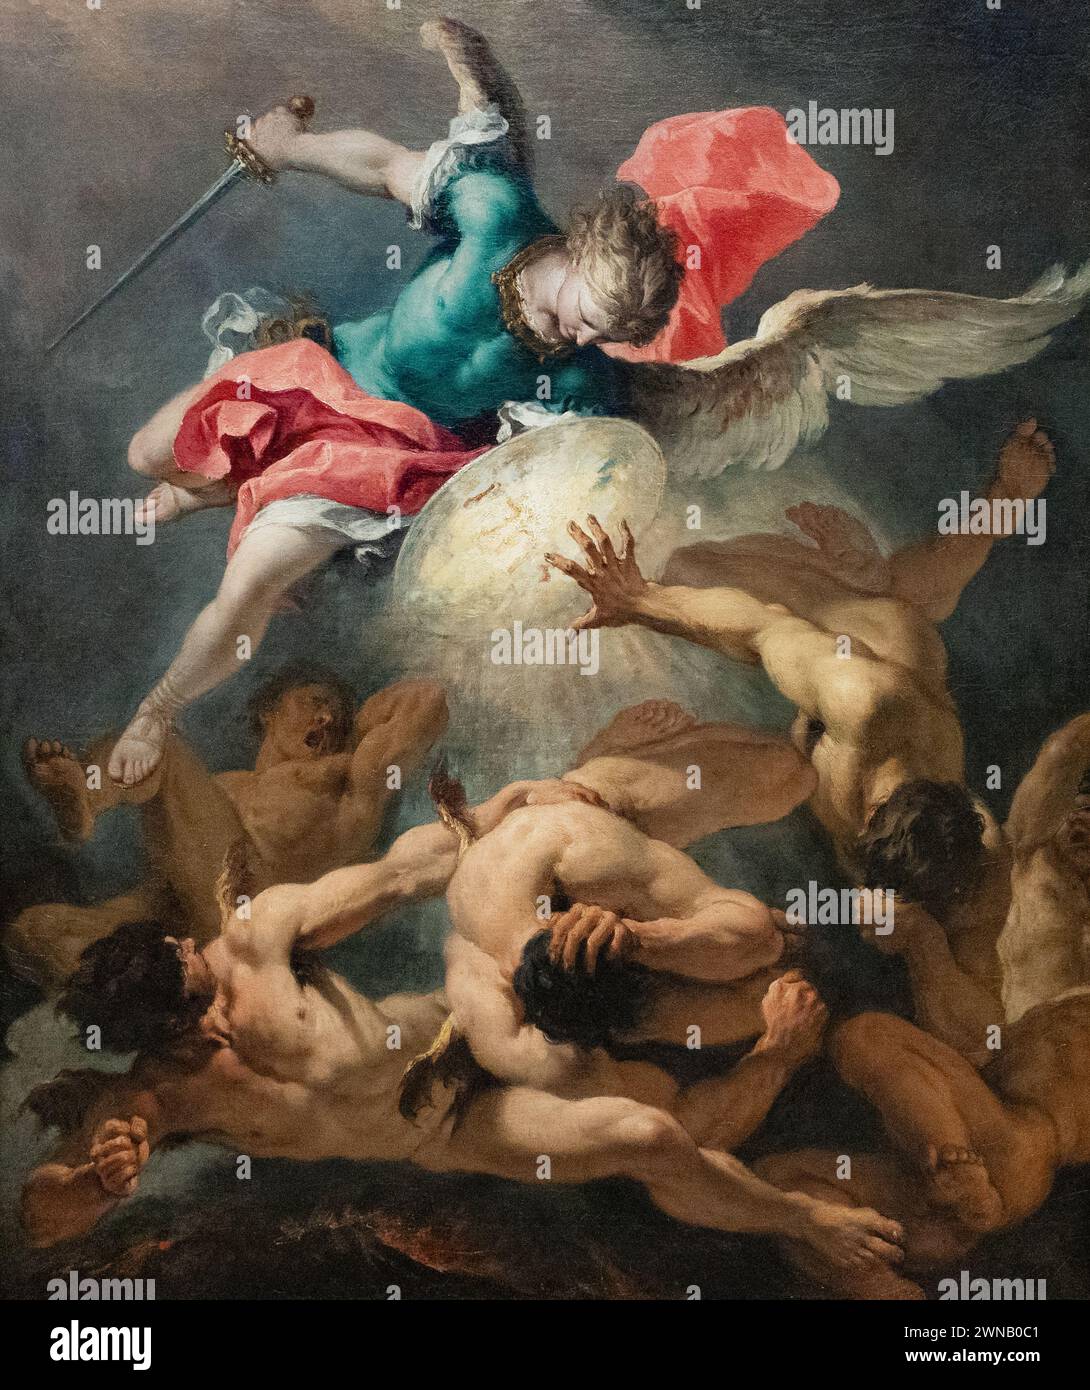 Sebastiano Ricci pittura; "la caduta degli Angeli ribelli", 1717-18; 1700 - XVIII secolo artista italiano della scuola barocca di Venezia Foto Stock